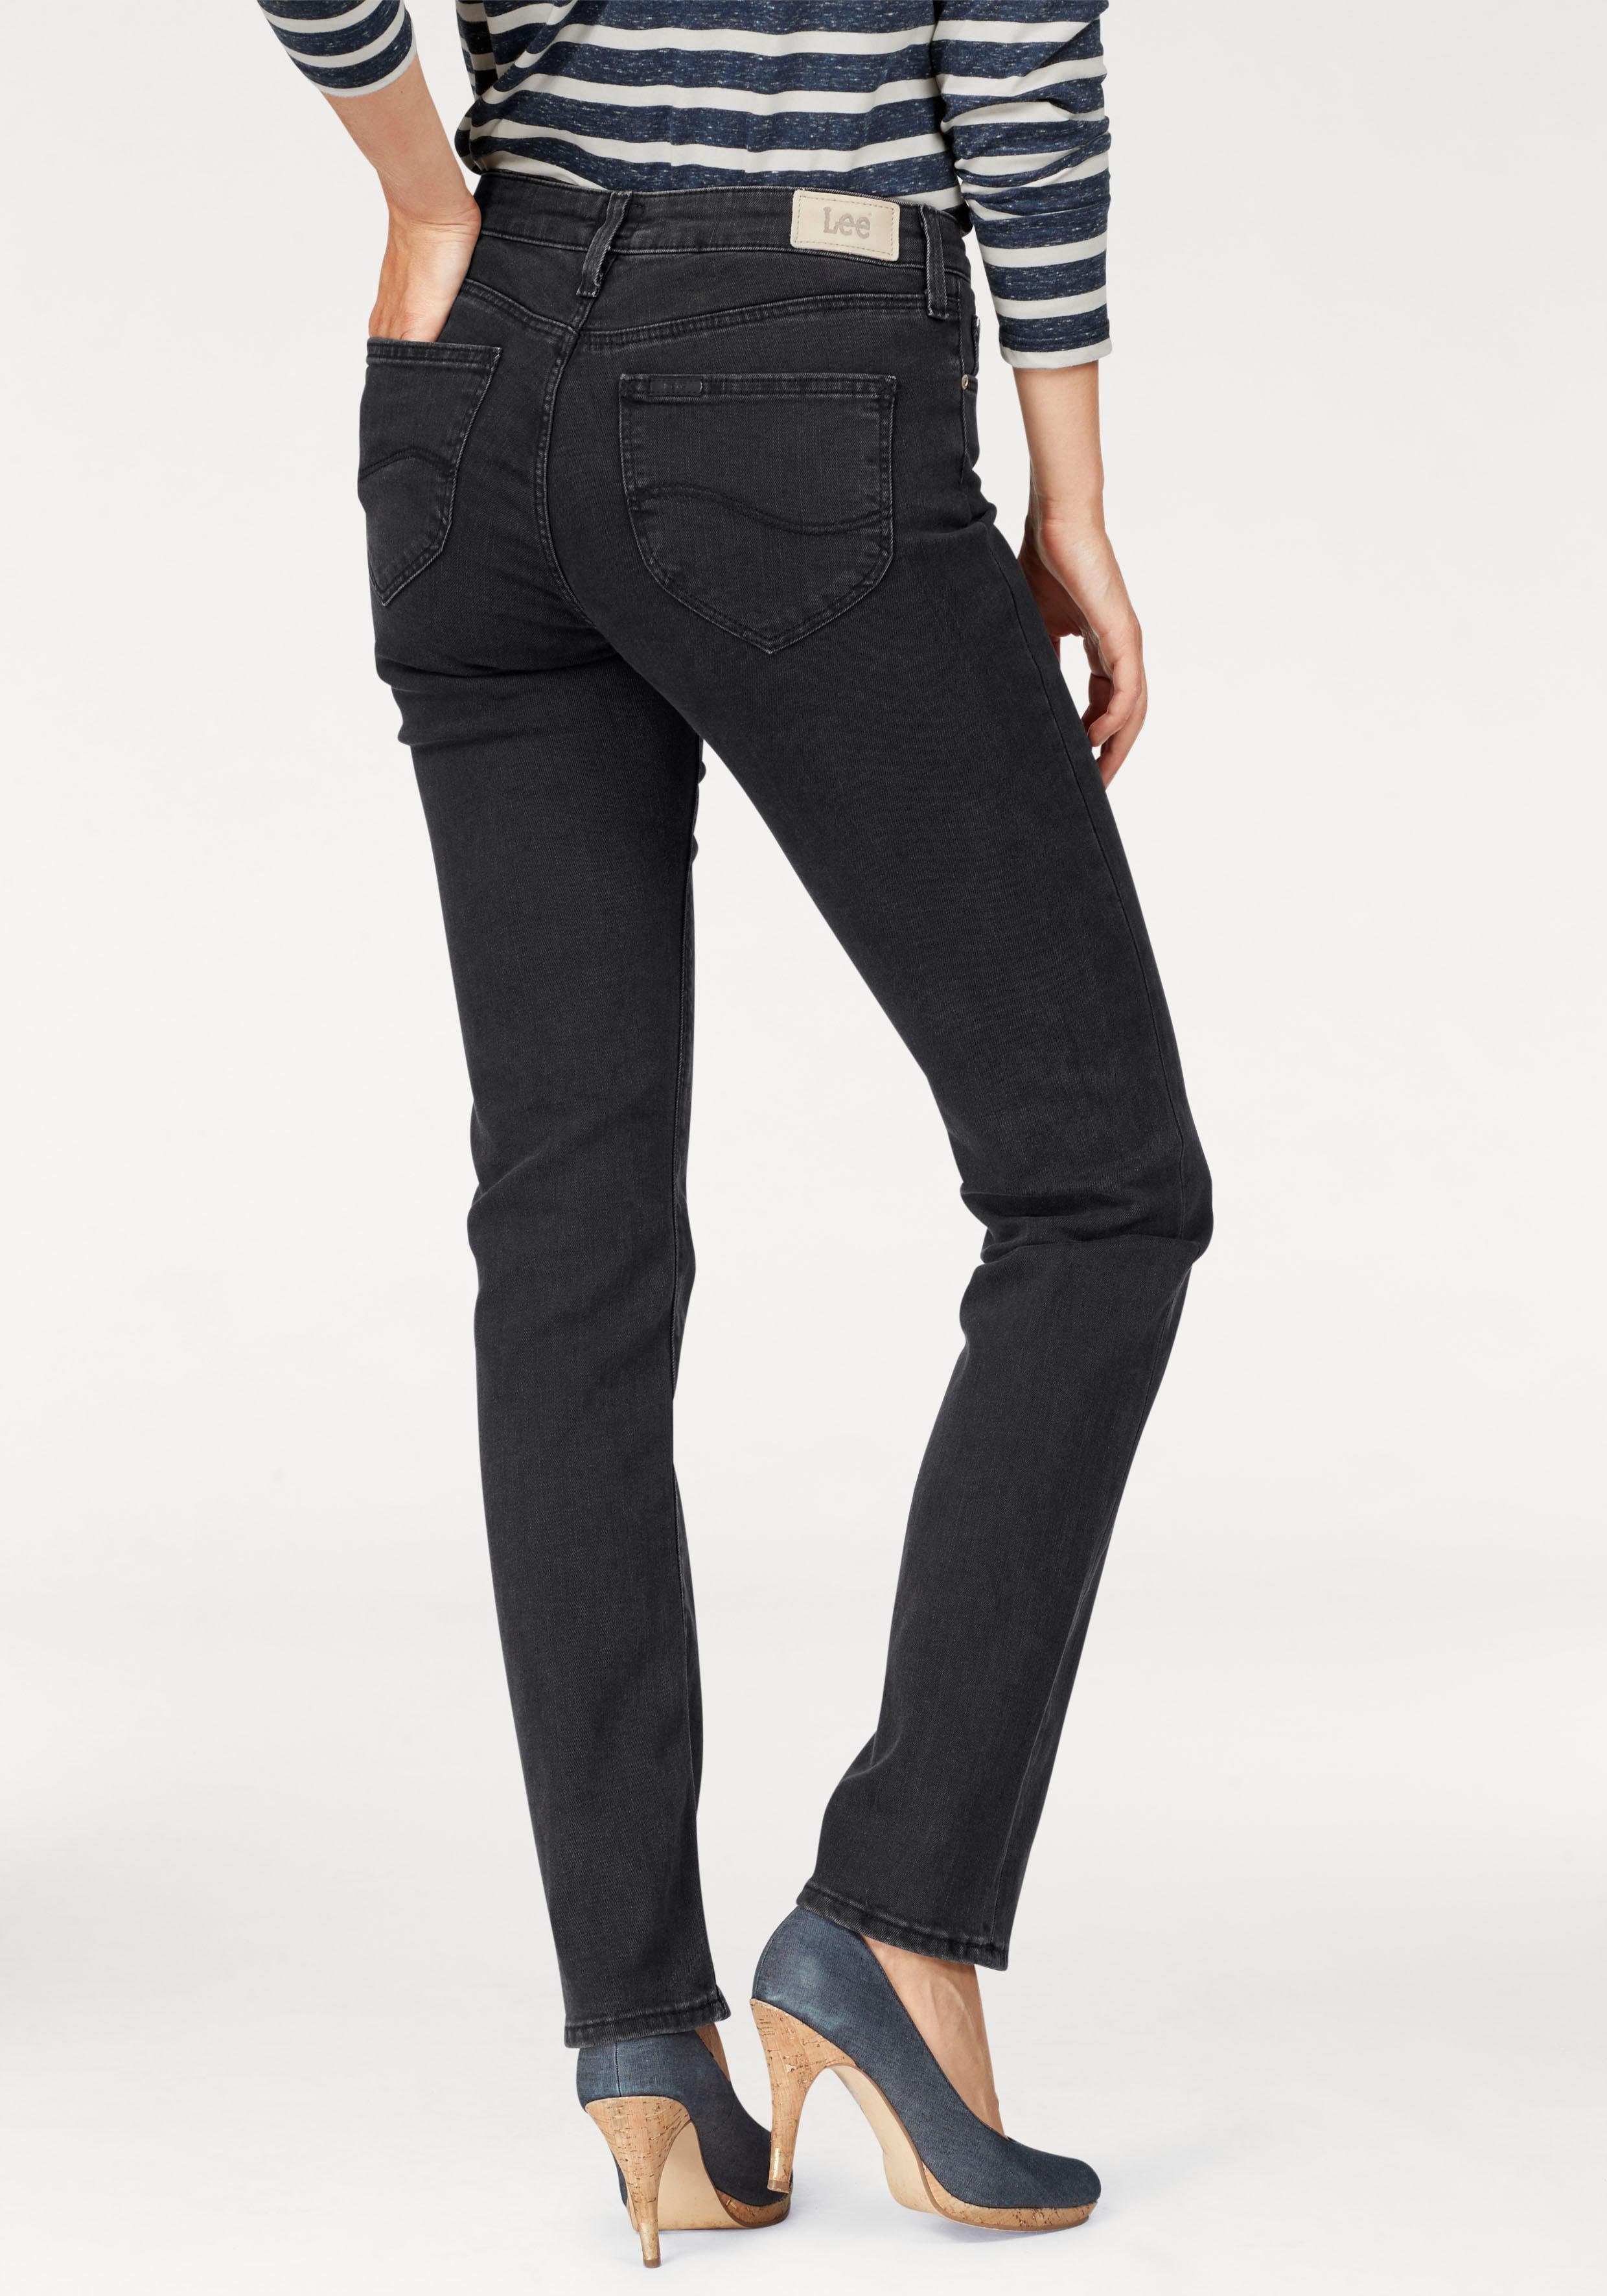 Lee NU 15% KORTING: LEE straight-jeans